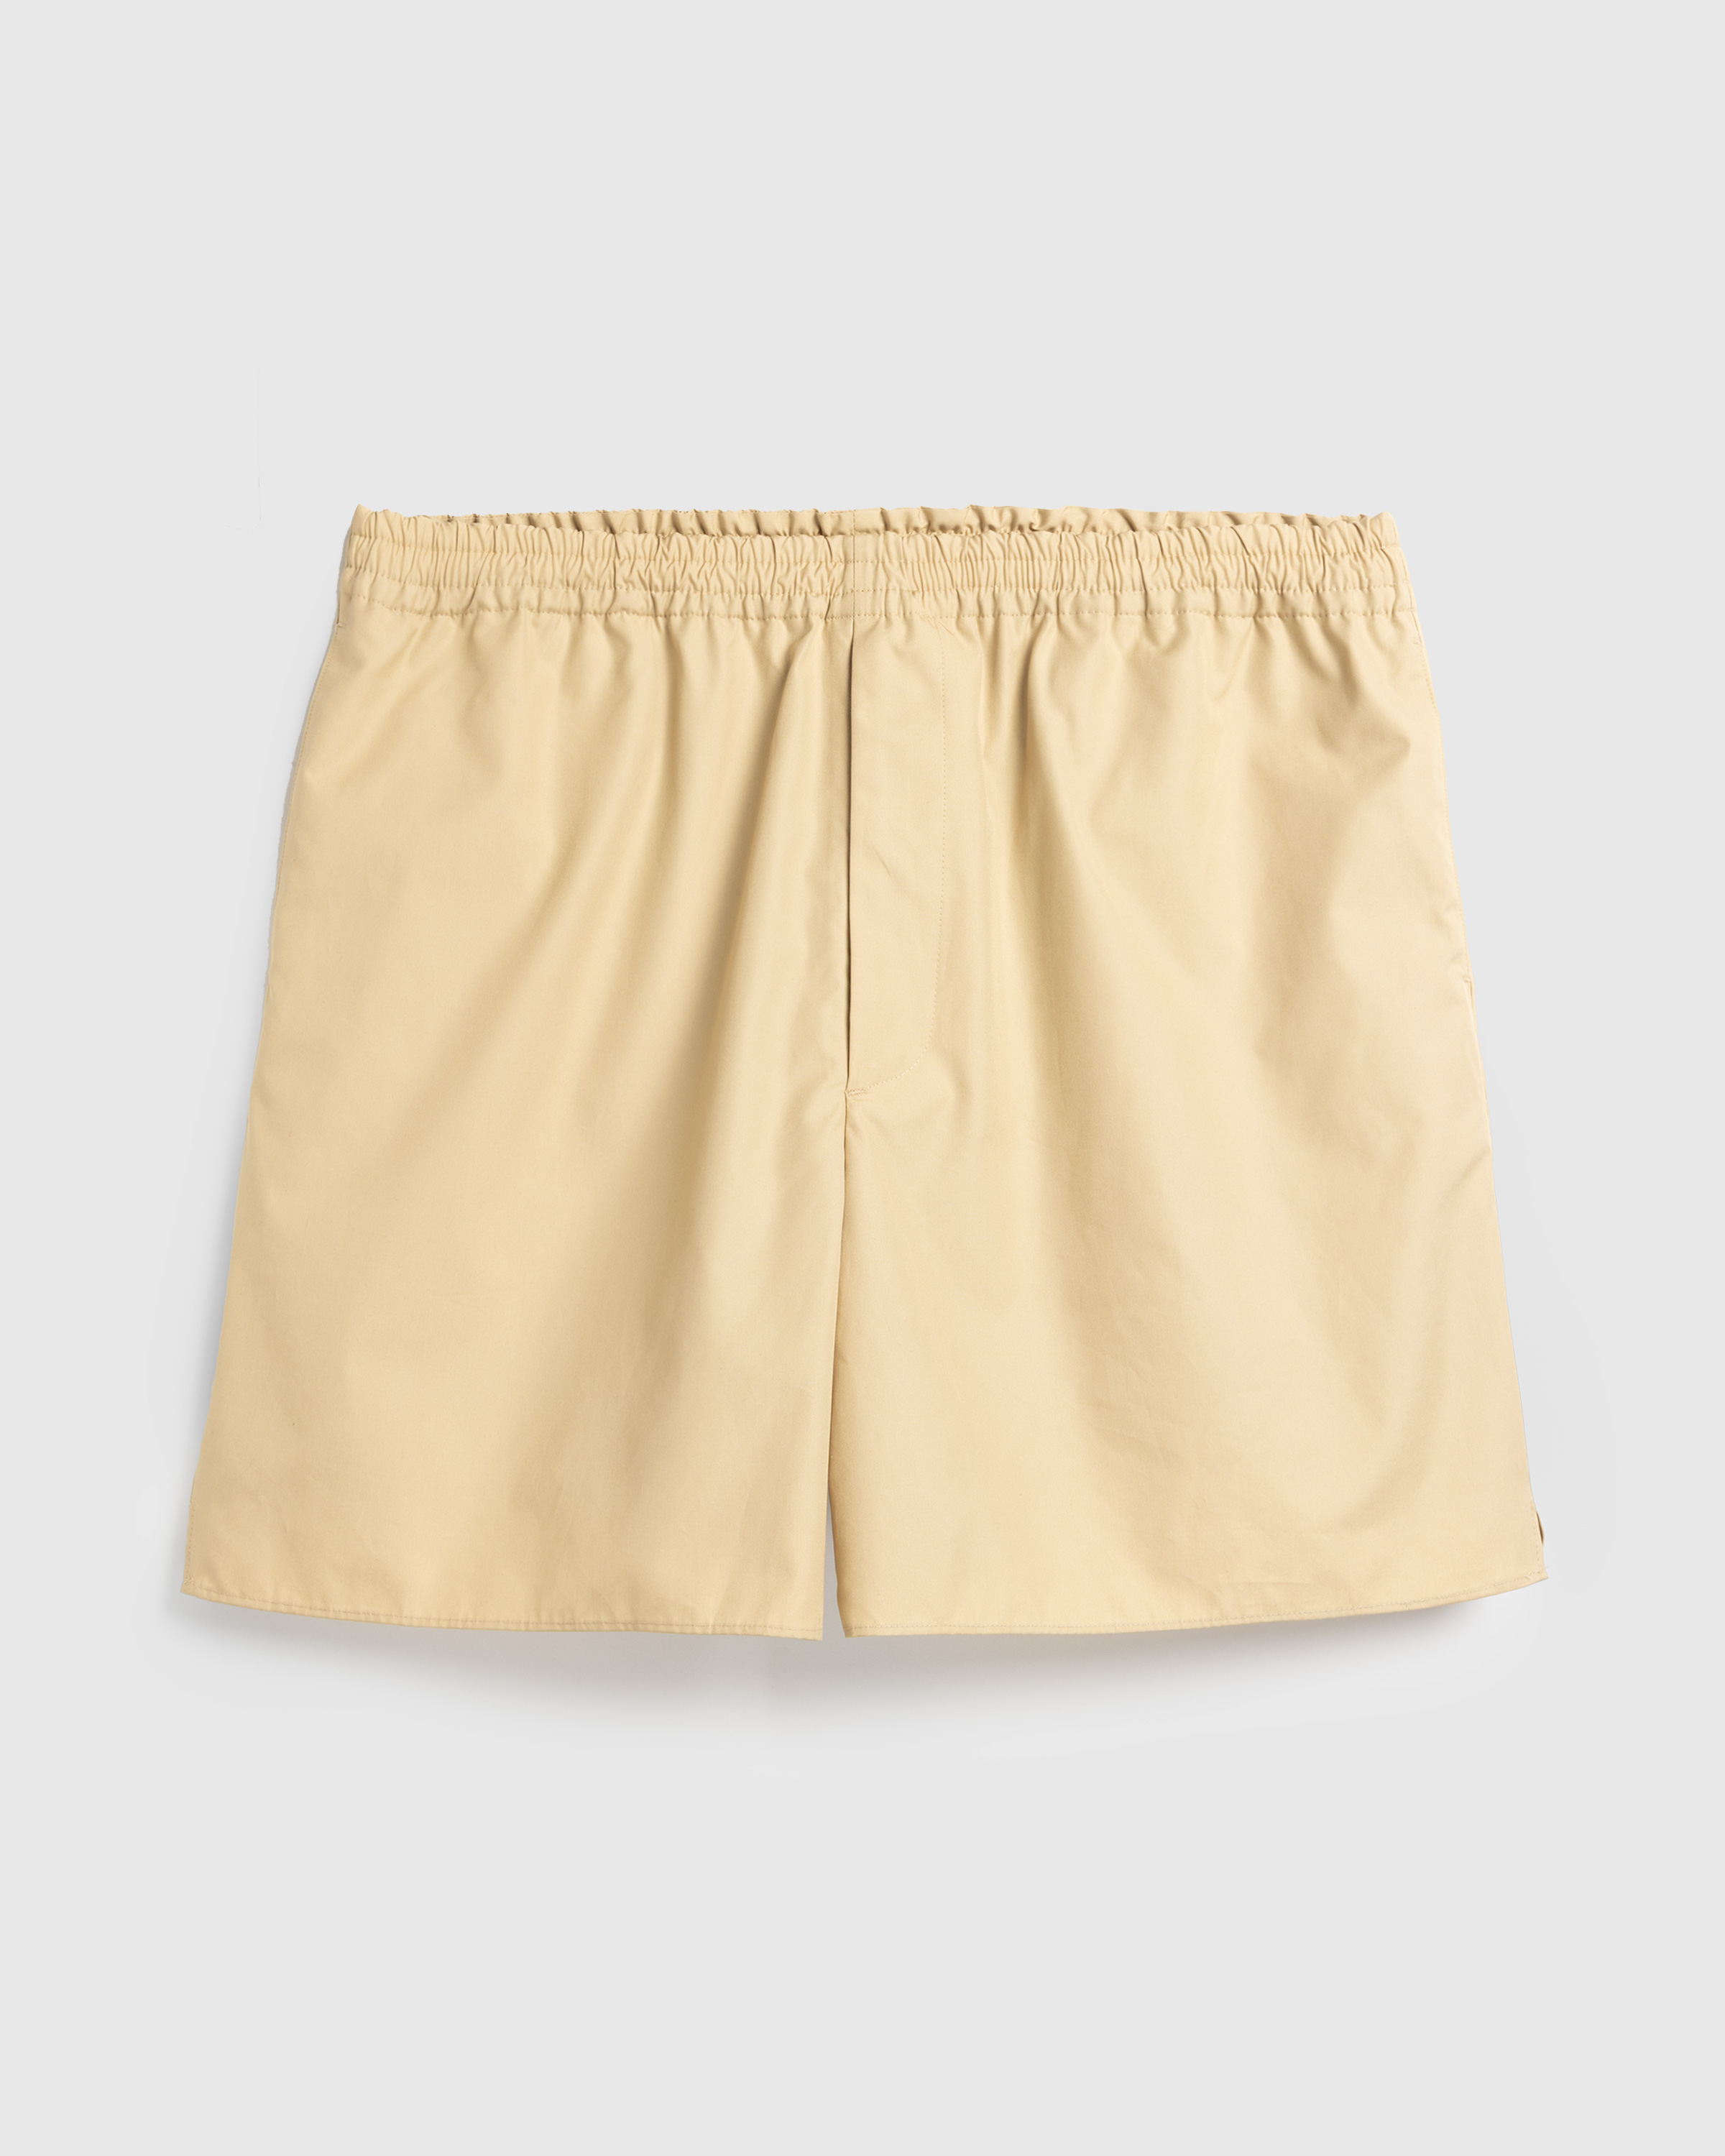 Auralee – High Count Finx Ox Shorts Beige - Shorts - Beige - Image 1